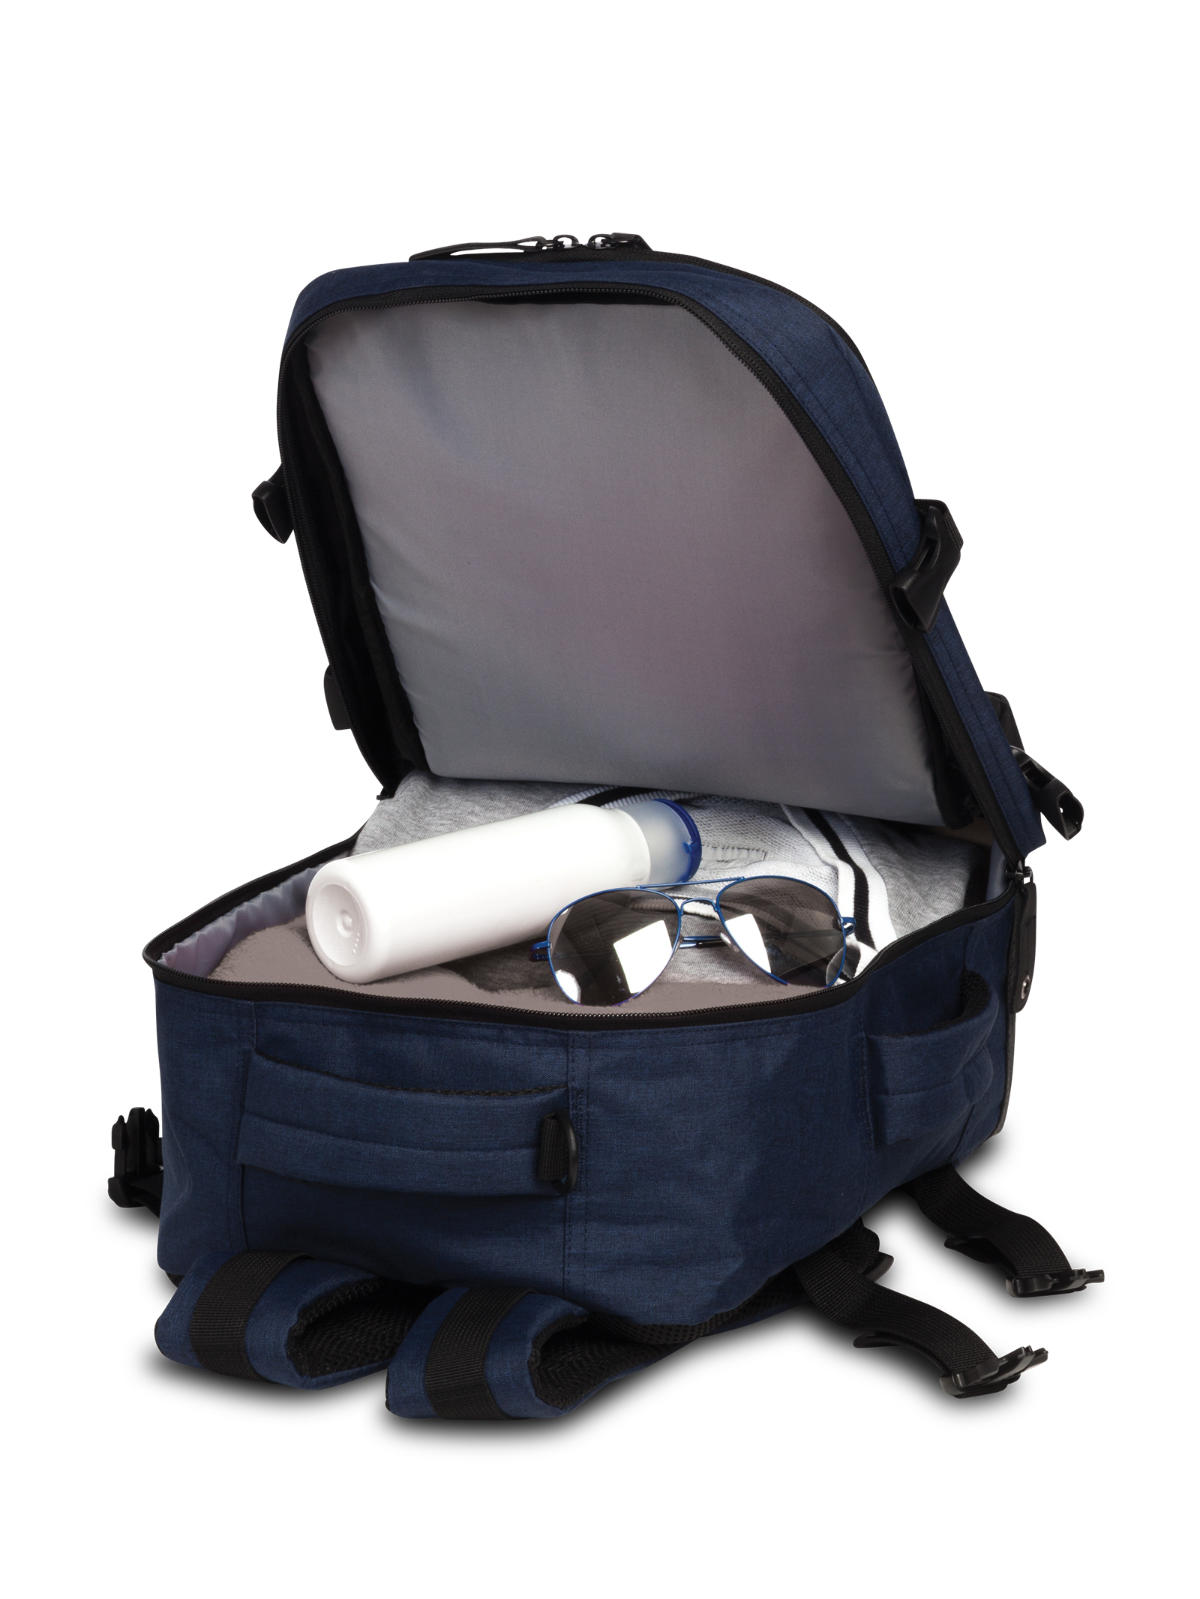 Bestway Handgepäck Rucksack für Ryanair geräumiges Hauptfach mit Demo-Inhalt dunkelblau